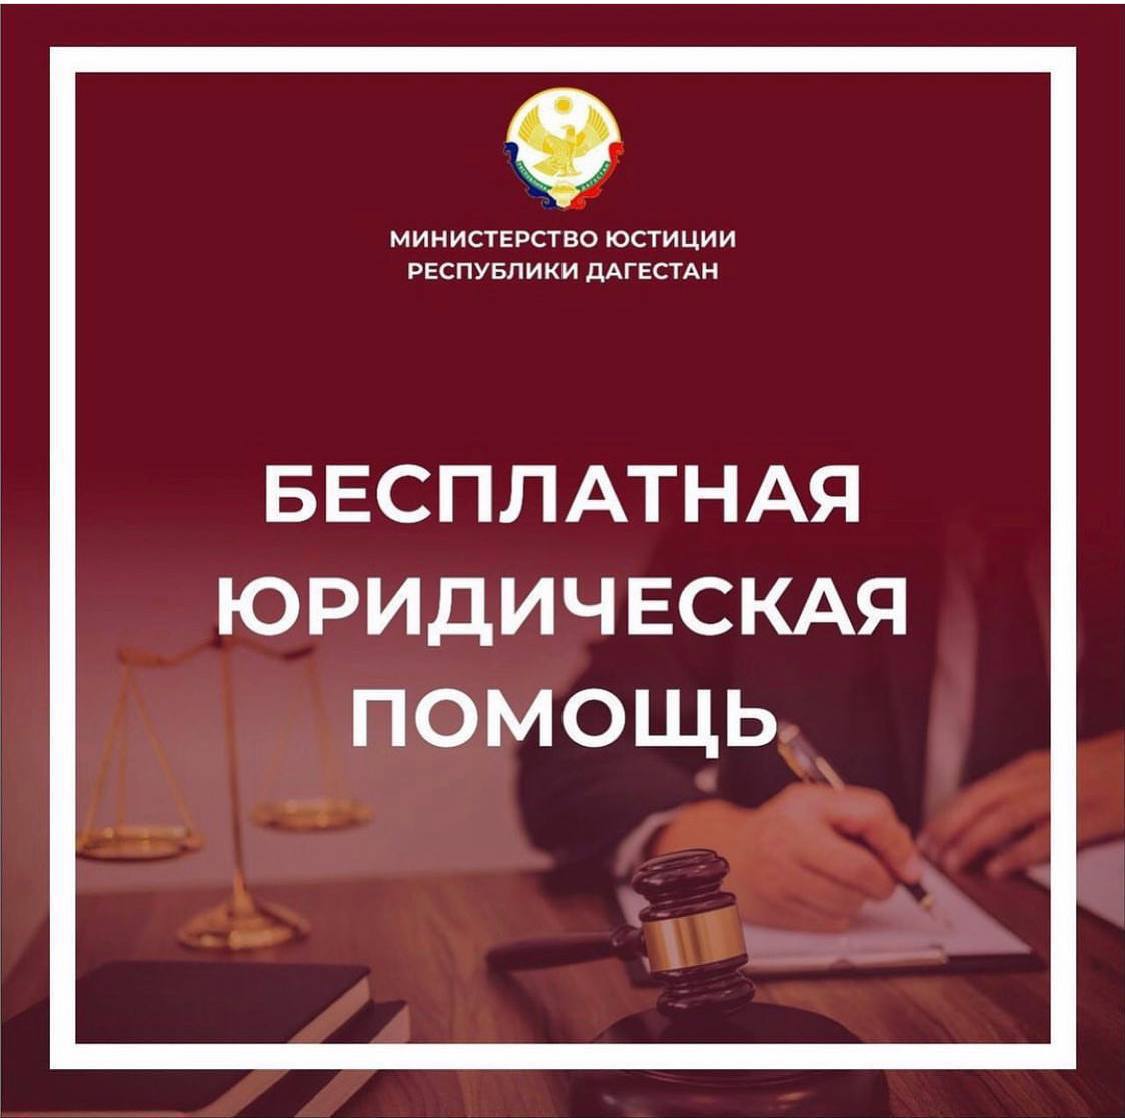 Для жителей Бабаюртовского района Дагестана организована бесплатная юридическая помощь